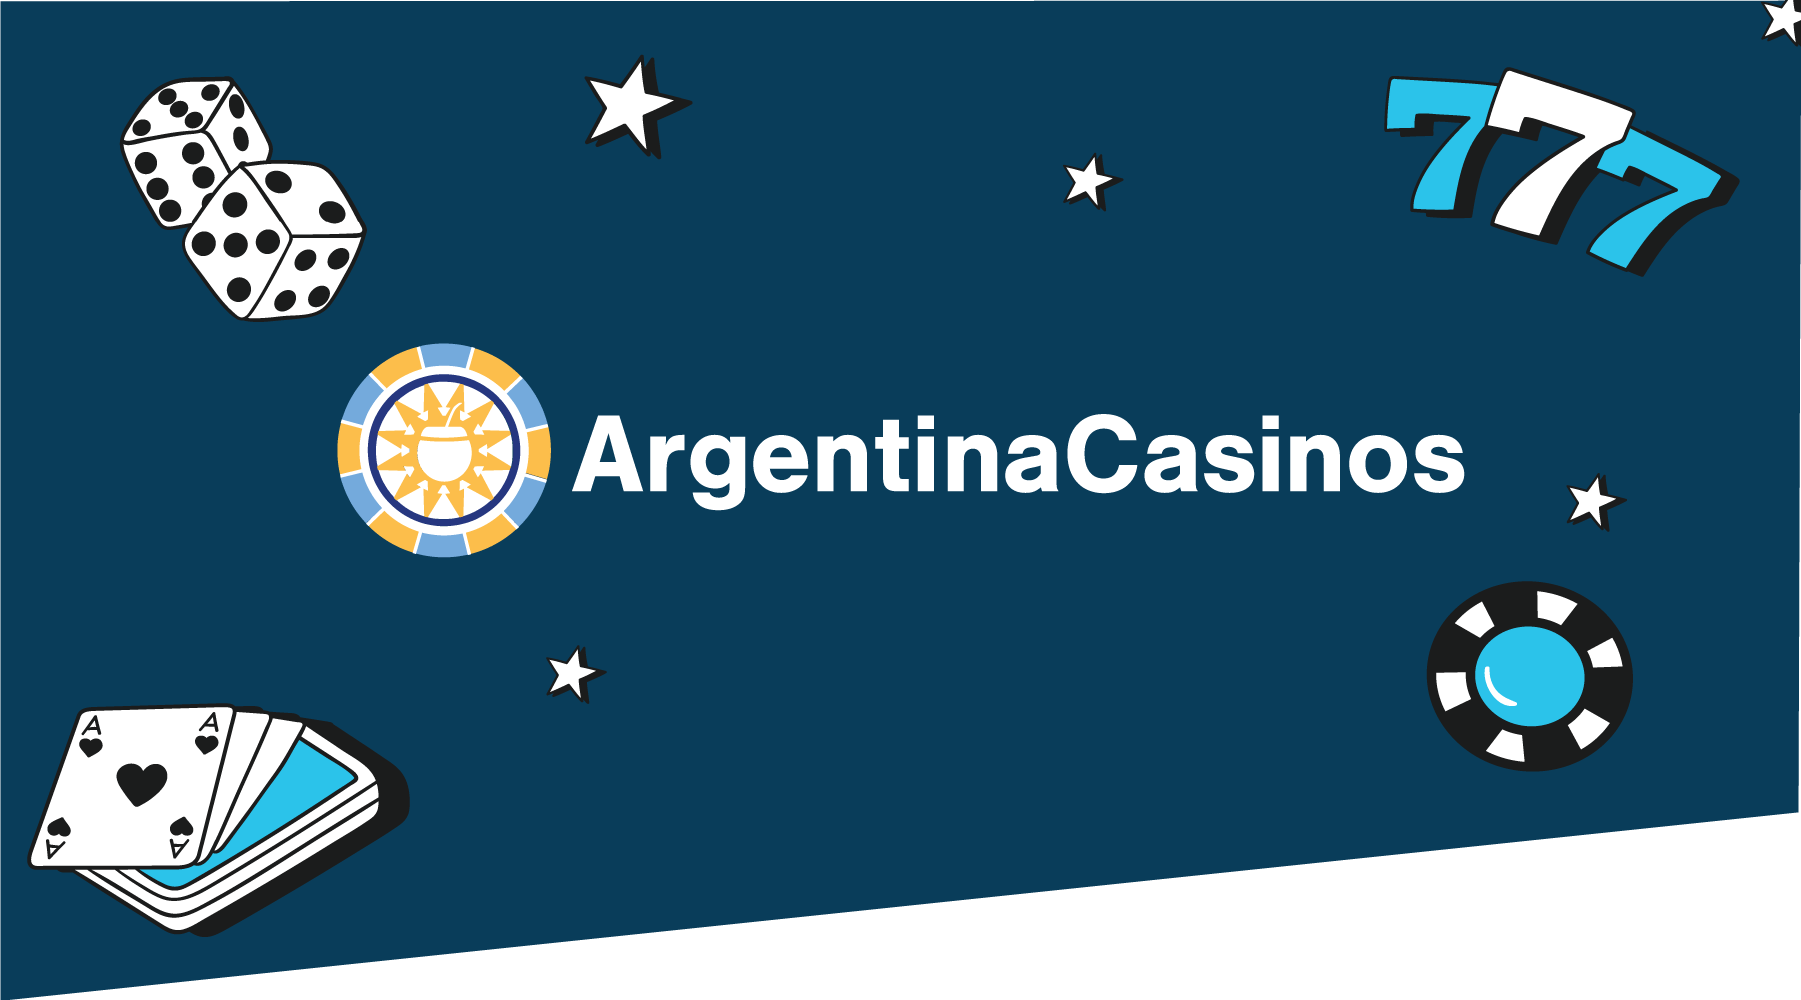 Argentina Casinos es nuestro nuevo sitio online en Latinoamérica